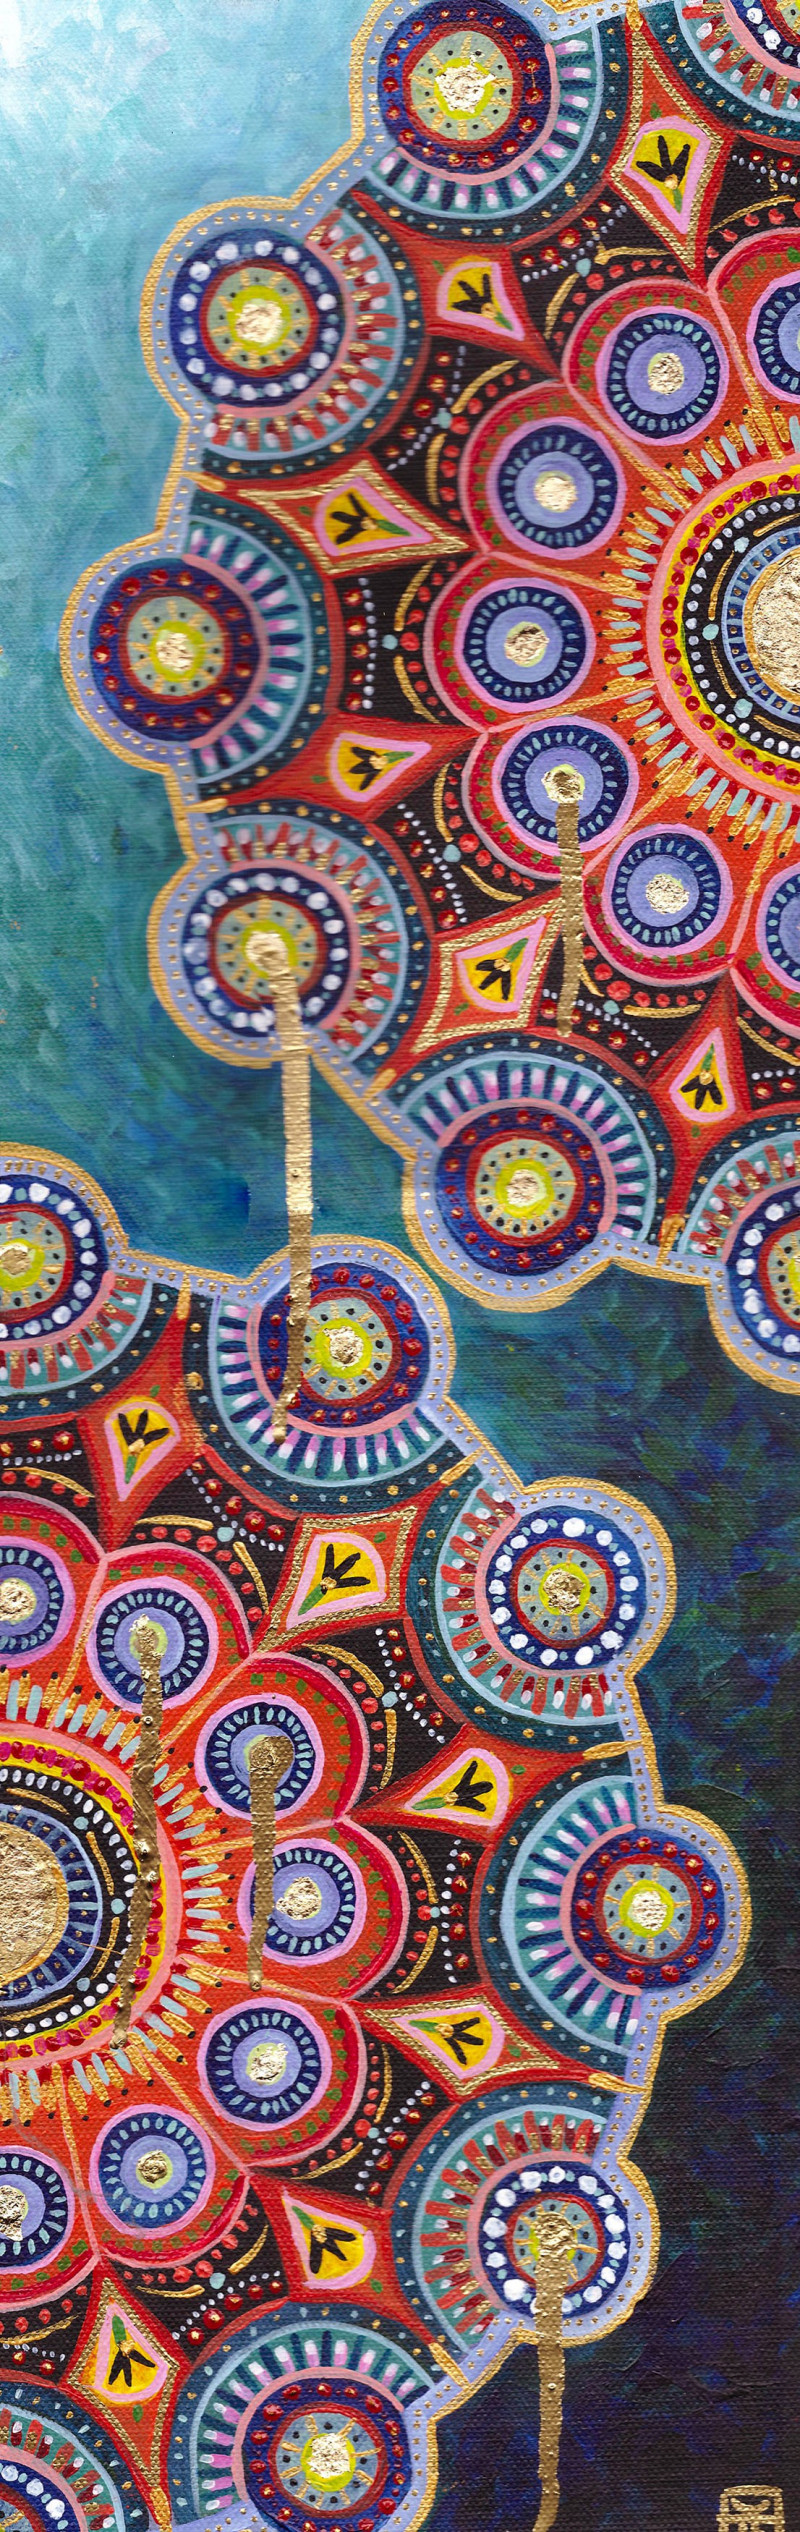 Mandala original painting by Julija Fokina. Calm paintings